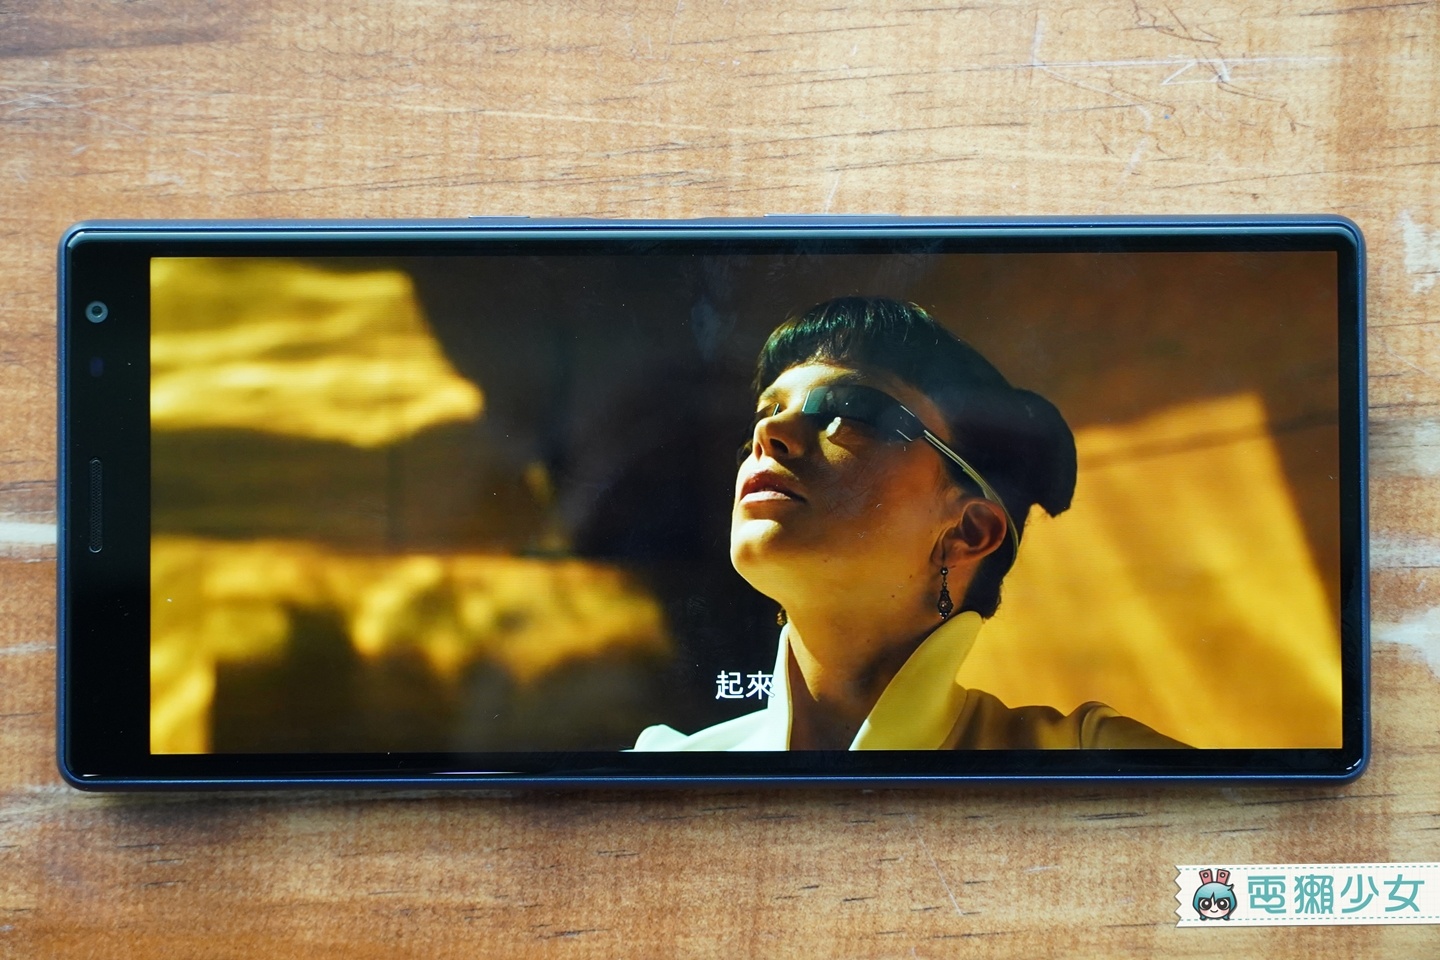 開箱 | Sony 手機 Xperia 10 Plus 與 Xperia 10，前鏡頭自拍拍出 21:9 景深美顏，側邊指紋辨識、耳機孔還在，為什麼我買單？